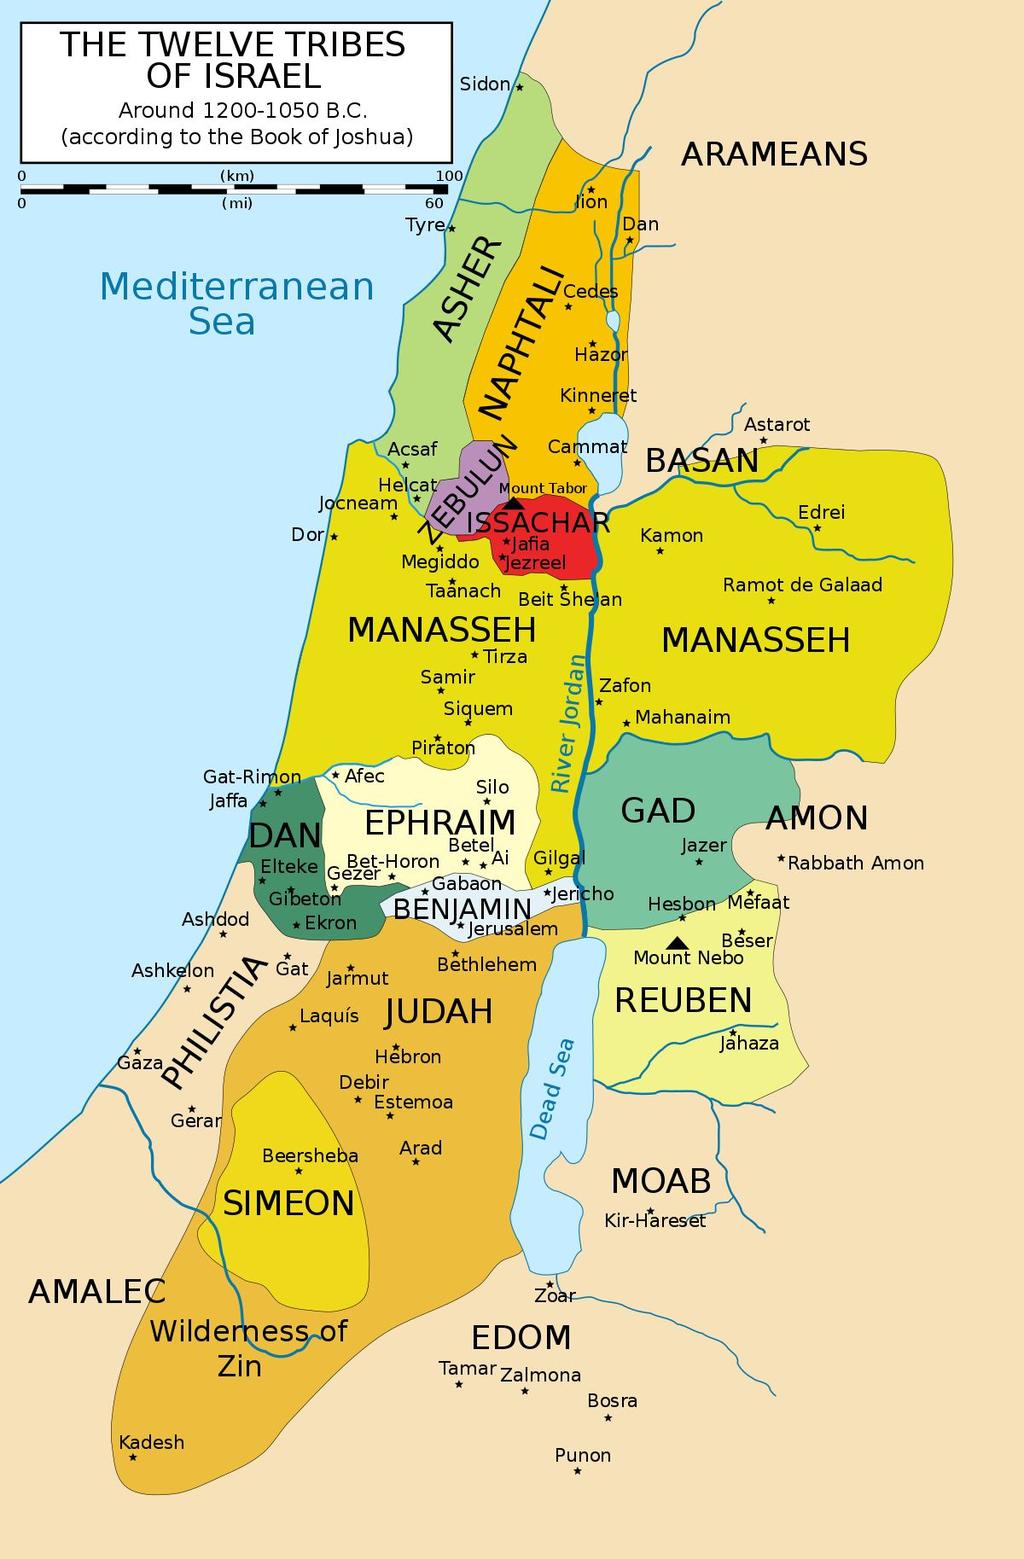 The Kingdom of Israel By 1000 B.C.